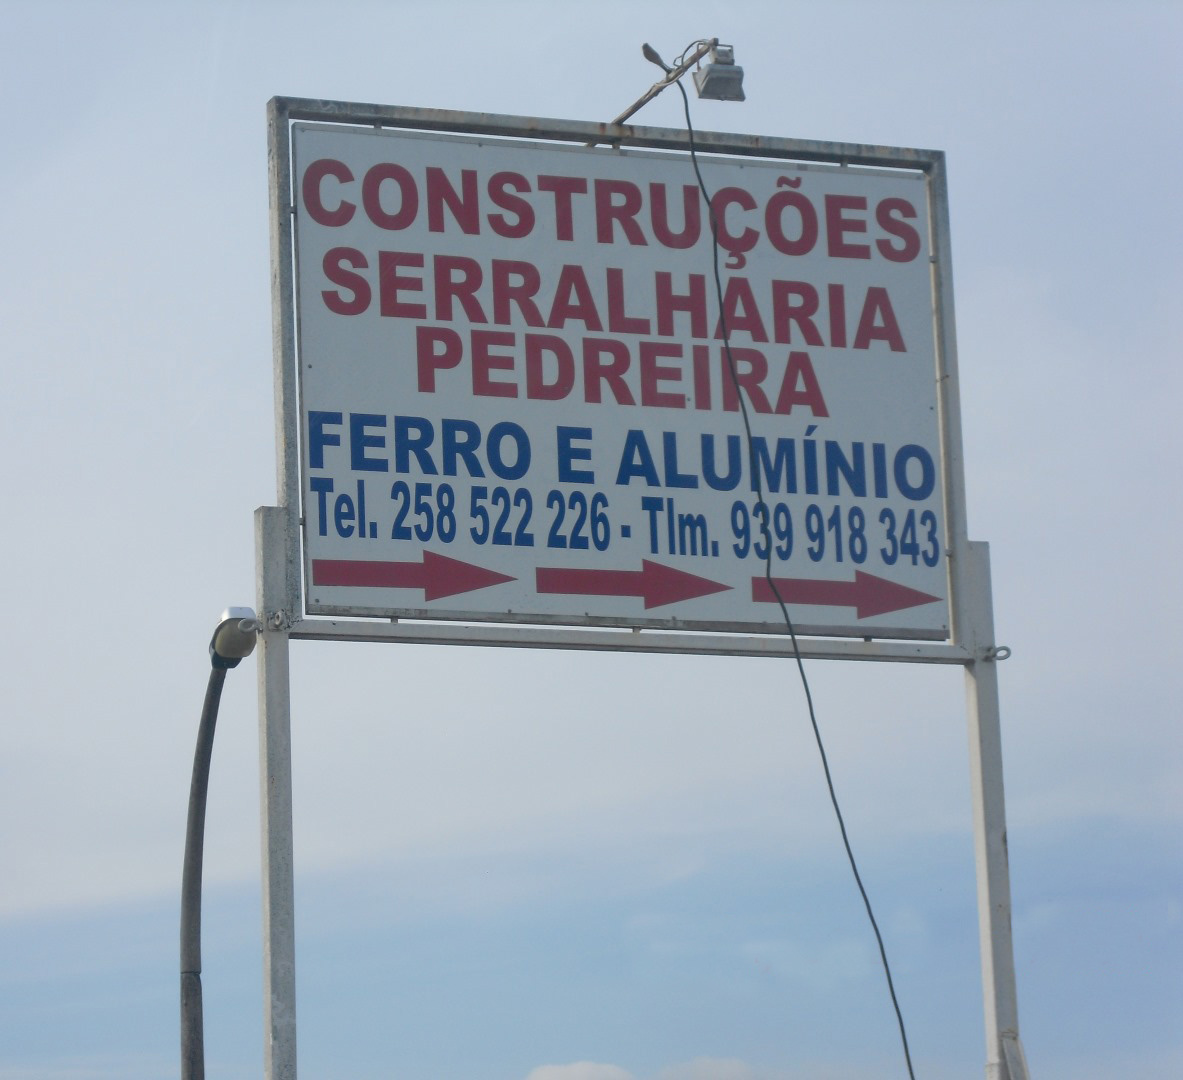 CONSTRUÇÕES & SERRALHARIA PEDREIRA